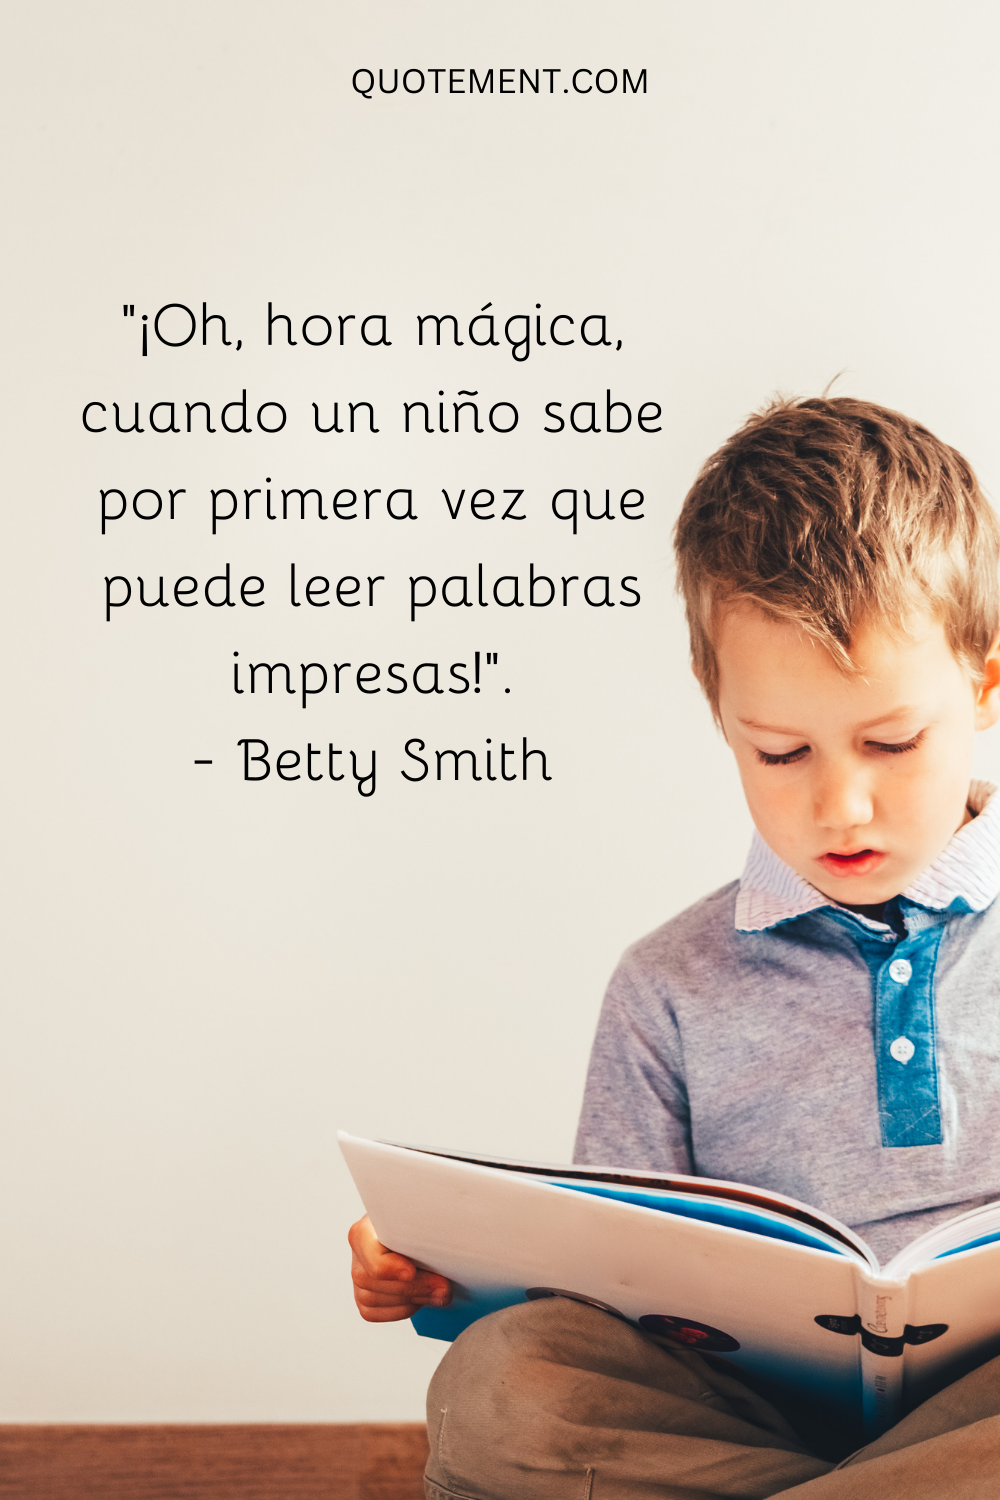 "¡Oh, hora mágica, cuando un niño sabe por primera vez que puede leer palabras impresas!" - Betty Smith